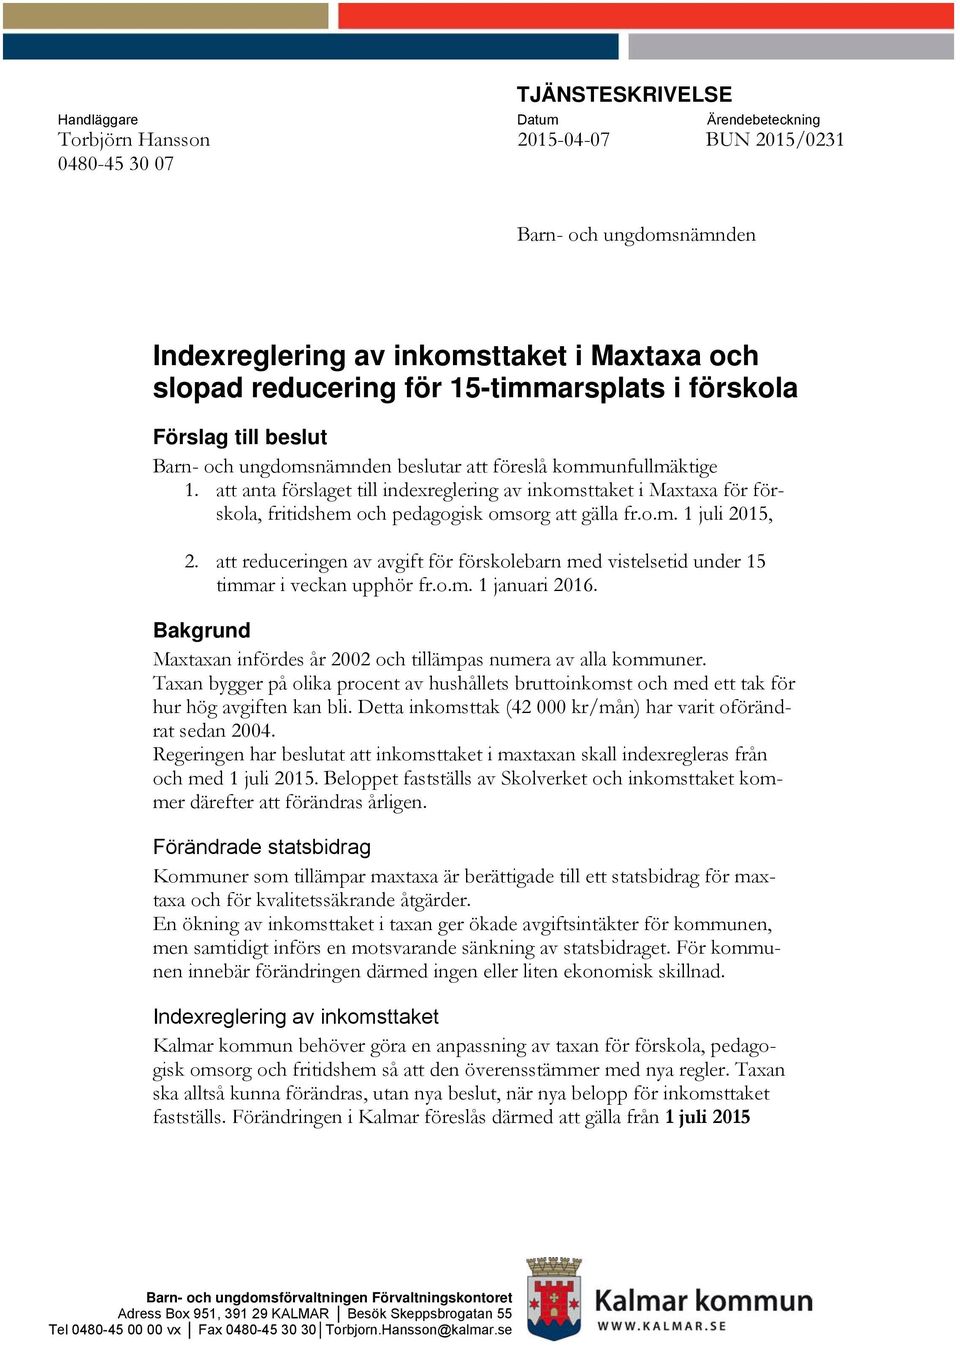 att anta förslaget till indexreglering av inkomsttaket i Maxtaxa för förskola, fritidshem och pedagogisk omsorg att gälla fr.o.m. 1 juli 2015, 2.